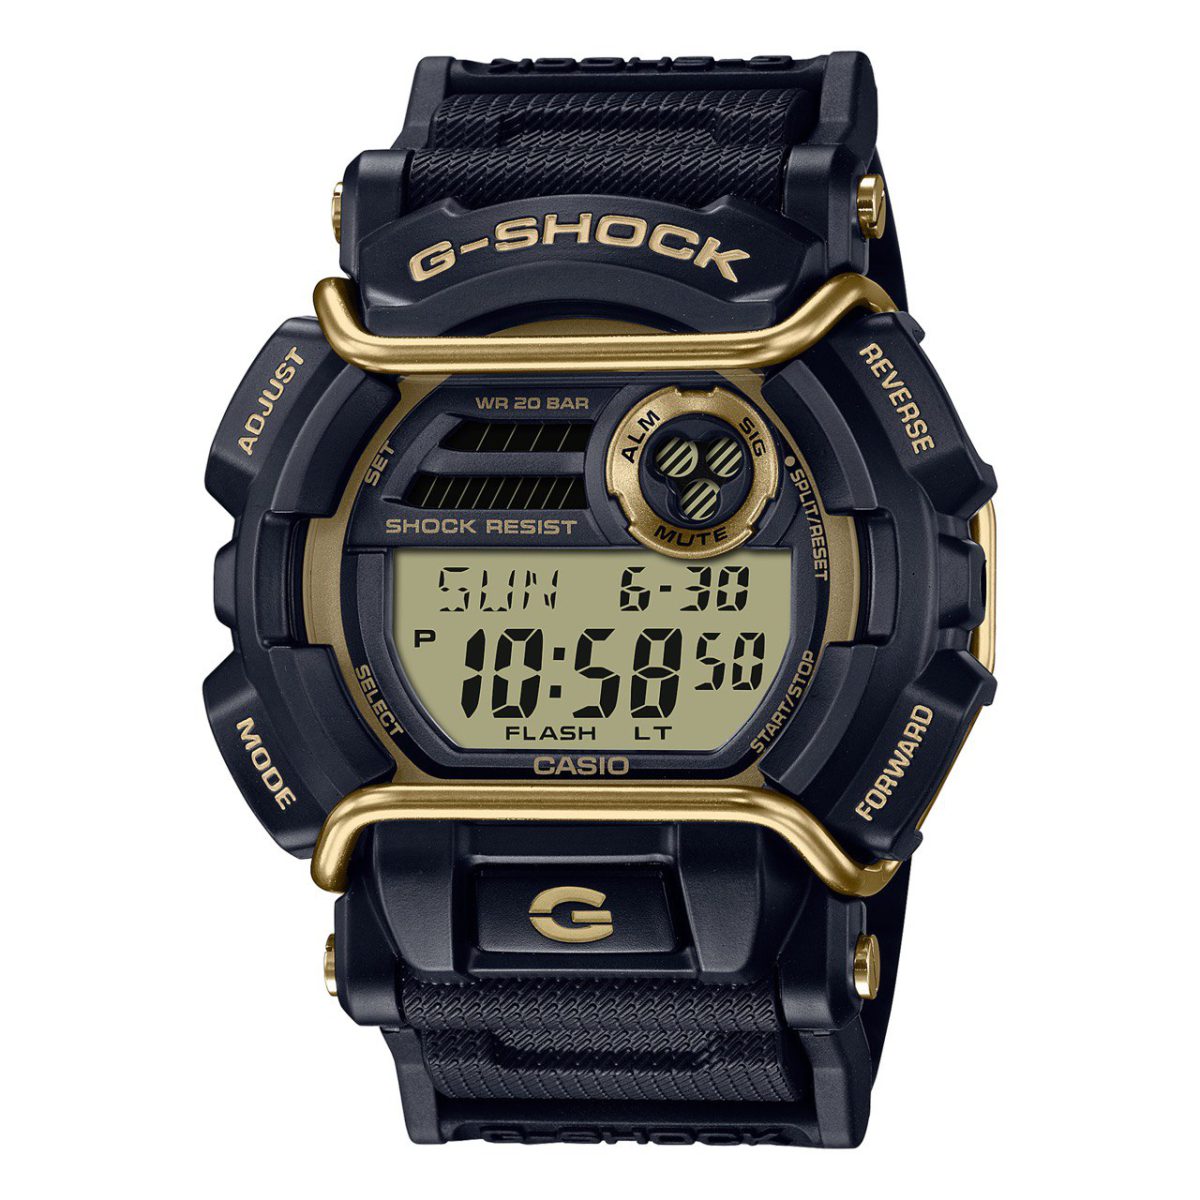 ساعت مچی مردانه G-Shock مدل CASIO GD-400GB-1B2DG